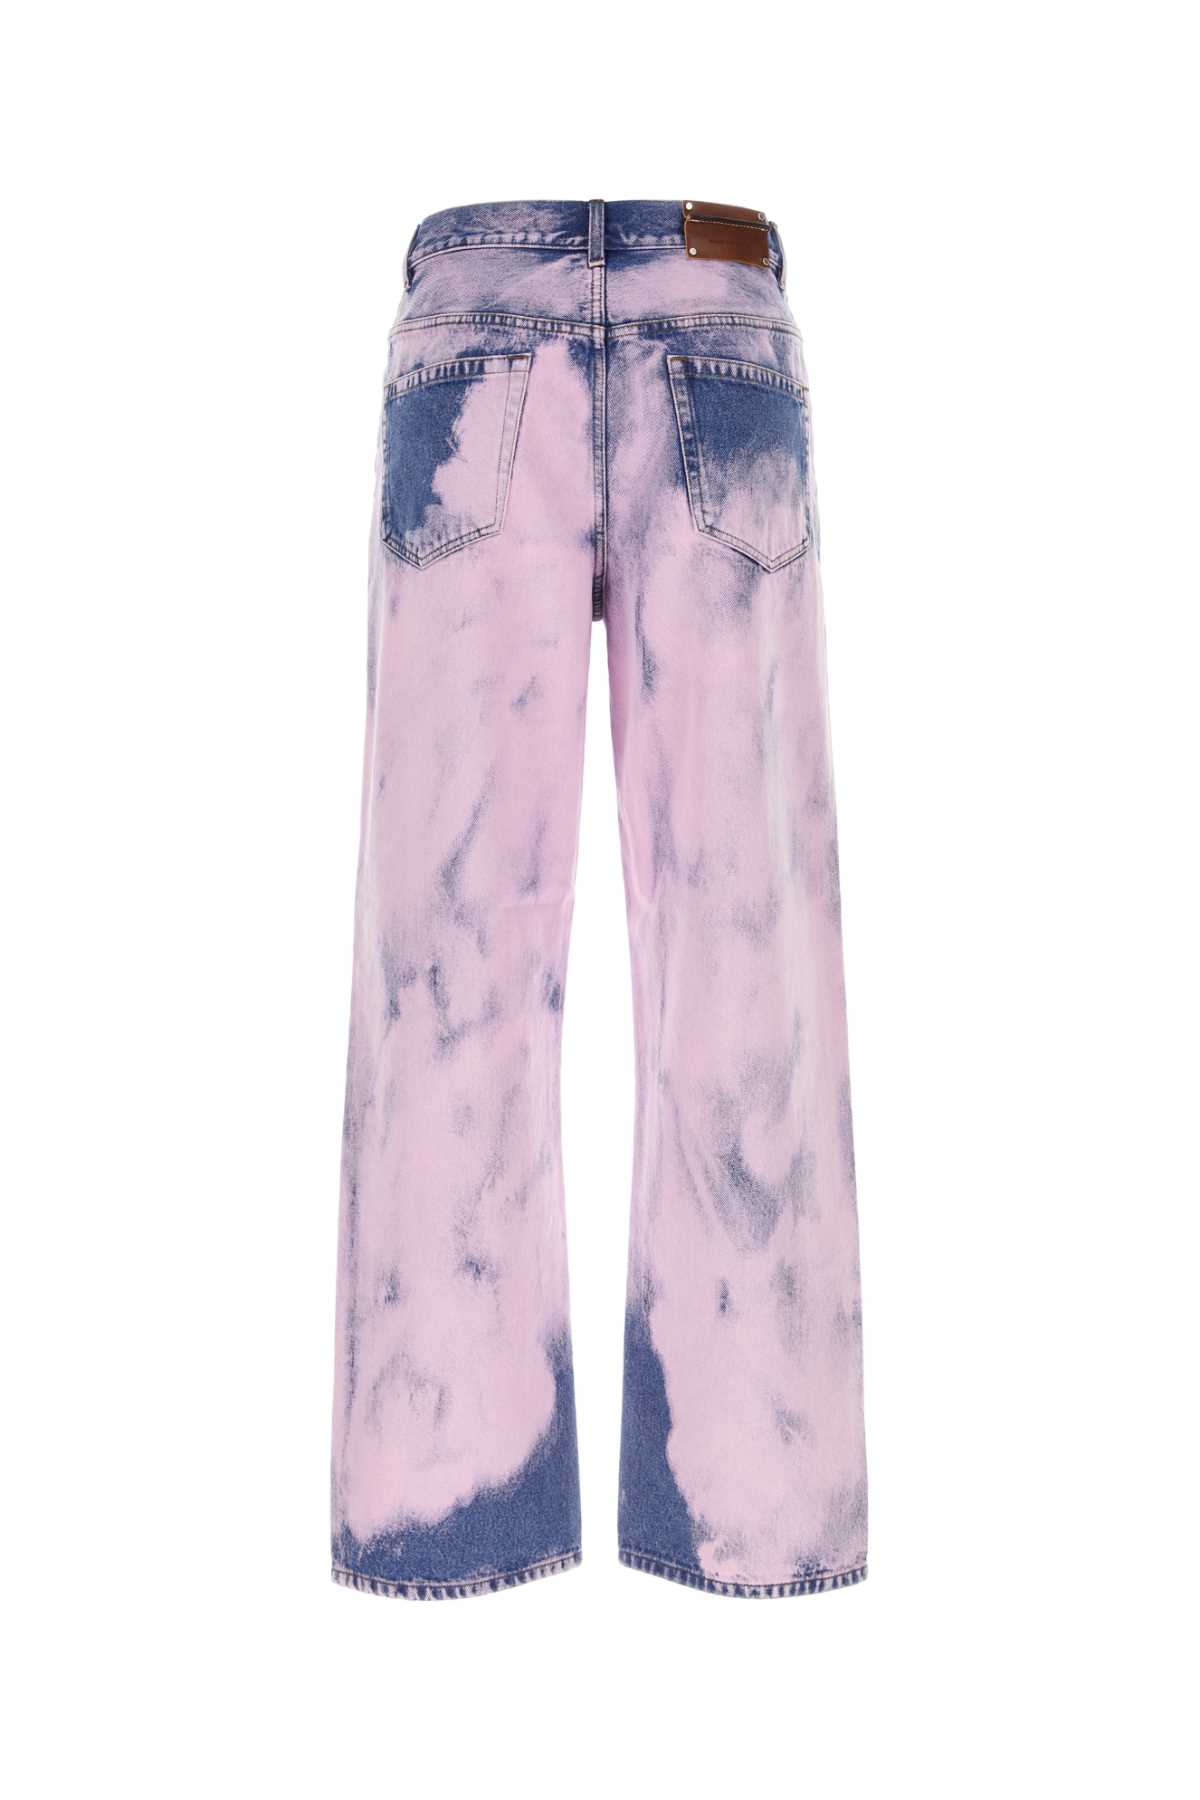 Dries Van Noten Two-tone Denim Jeans In Pink